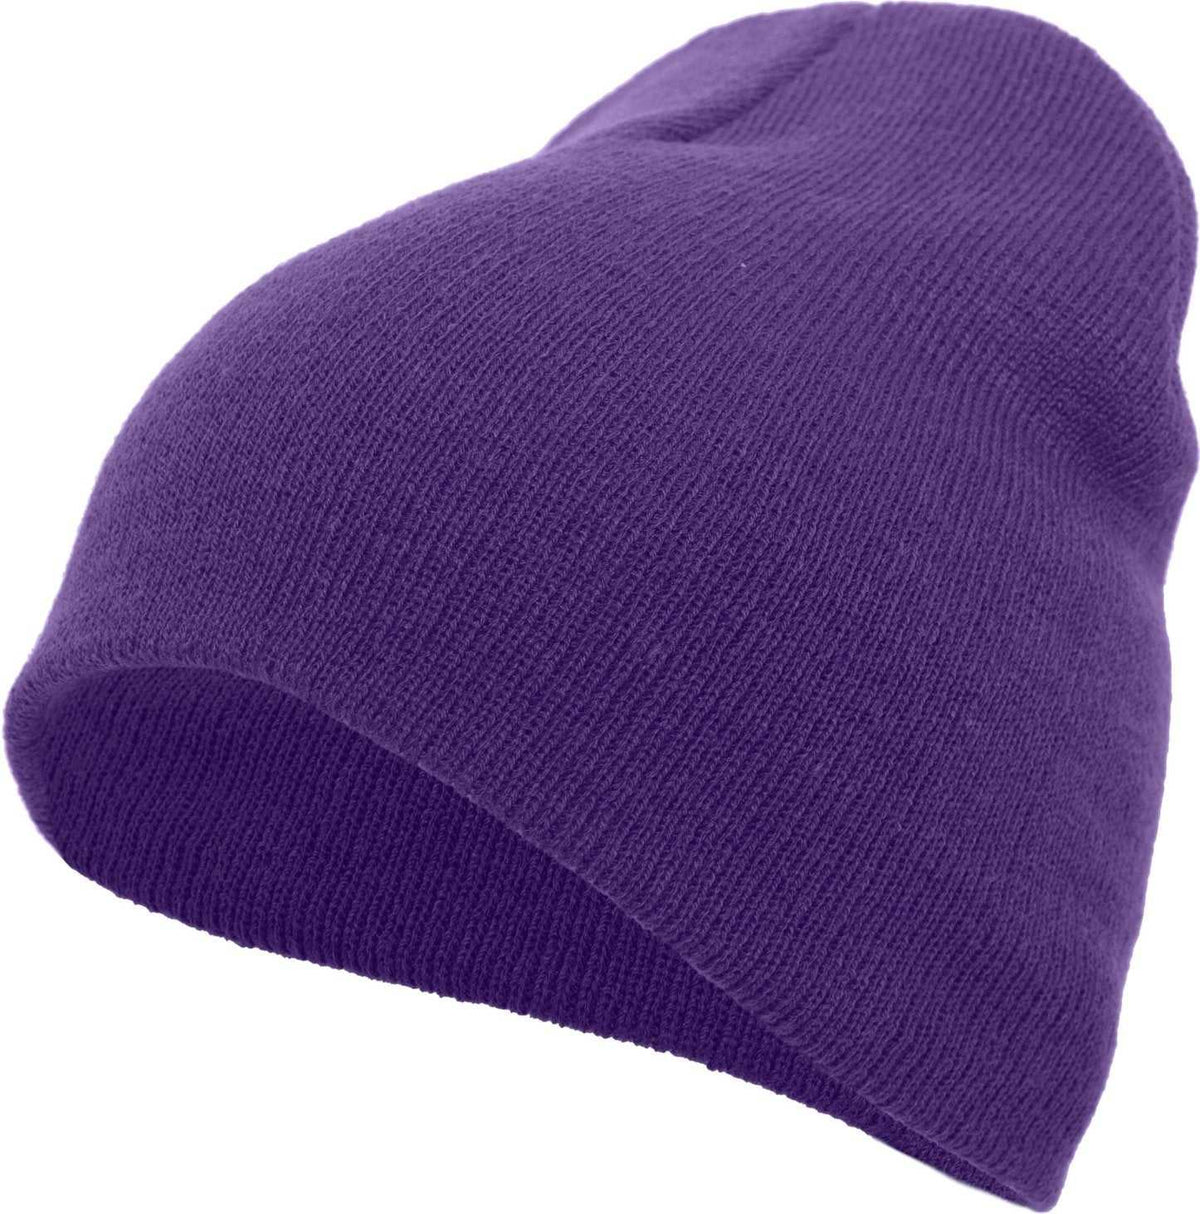 Pacific Headwear 601K Knit Beanie - Purple - HIT a Double